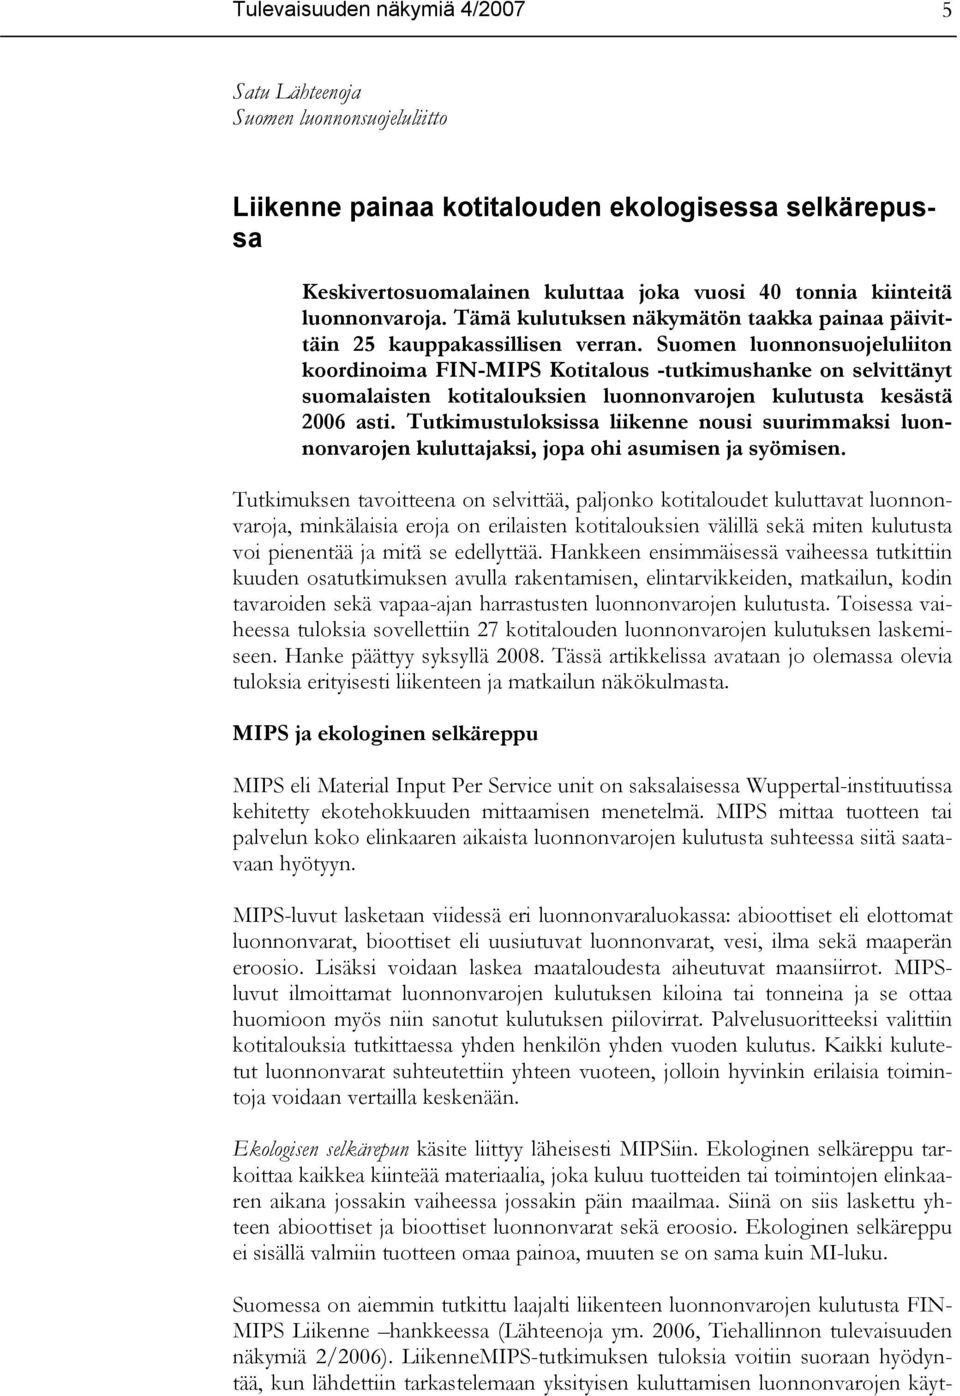 Suomen luonnonsuojeluliiton koordinoima FIN-MIPS Kotitalous -tutkimushanke on selvittänyt suomalaisten kotitalouksien luonnonvarojen kulutusta kesästä 2006 asti.